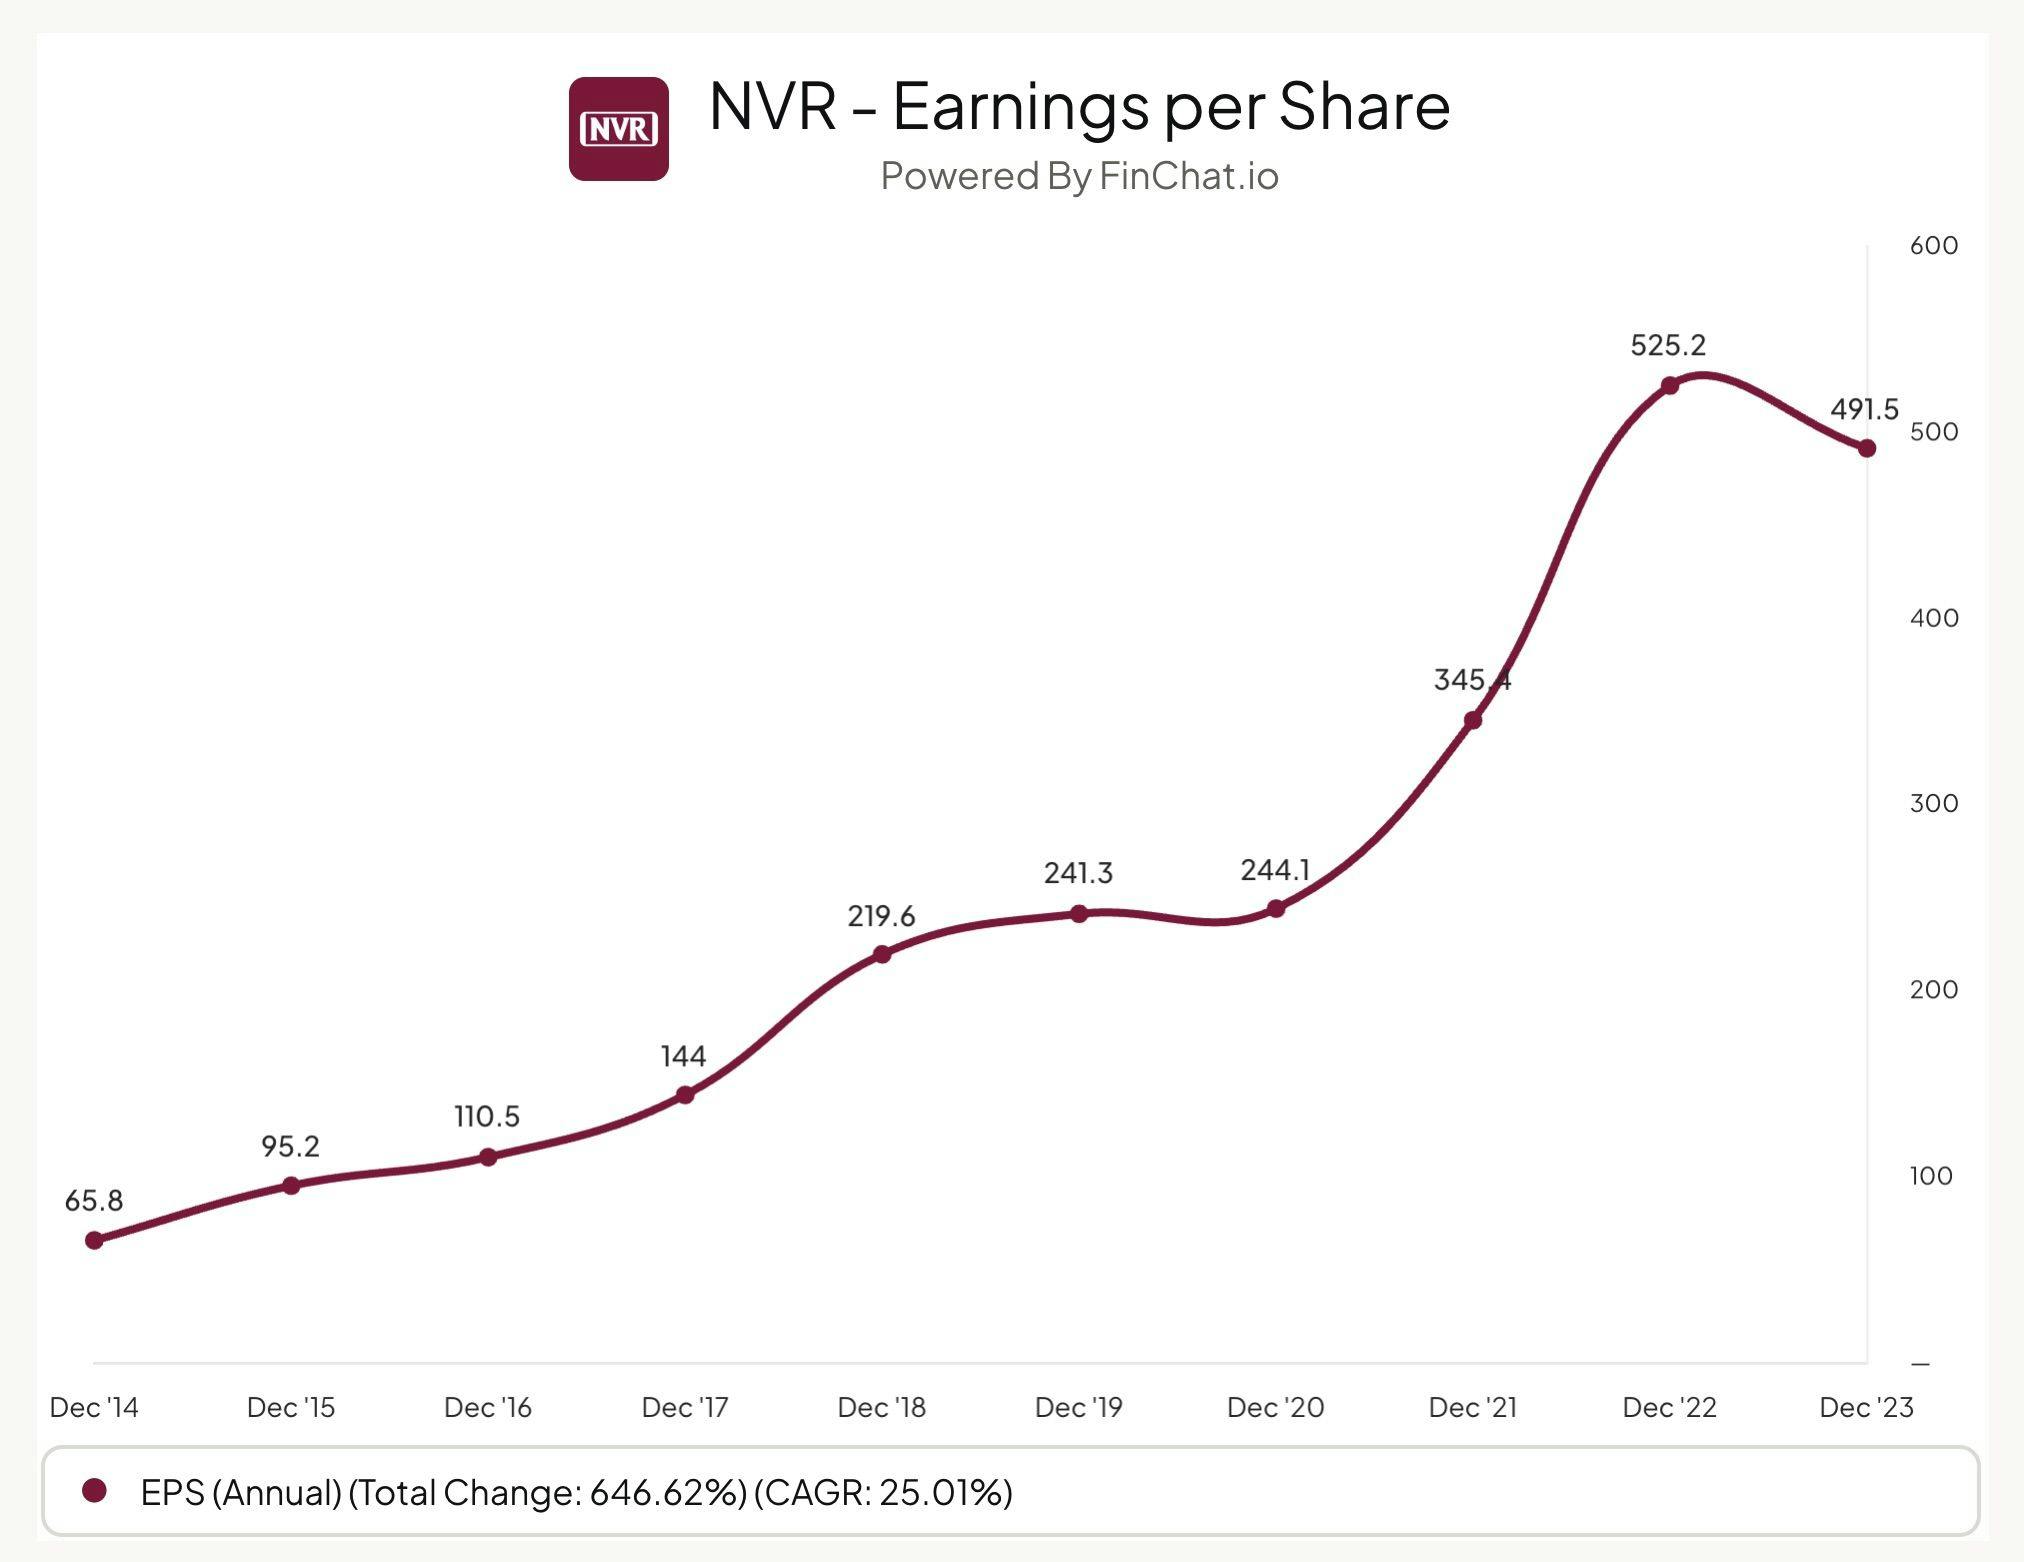 NVR Earnings per Share